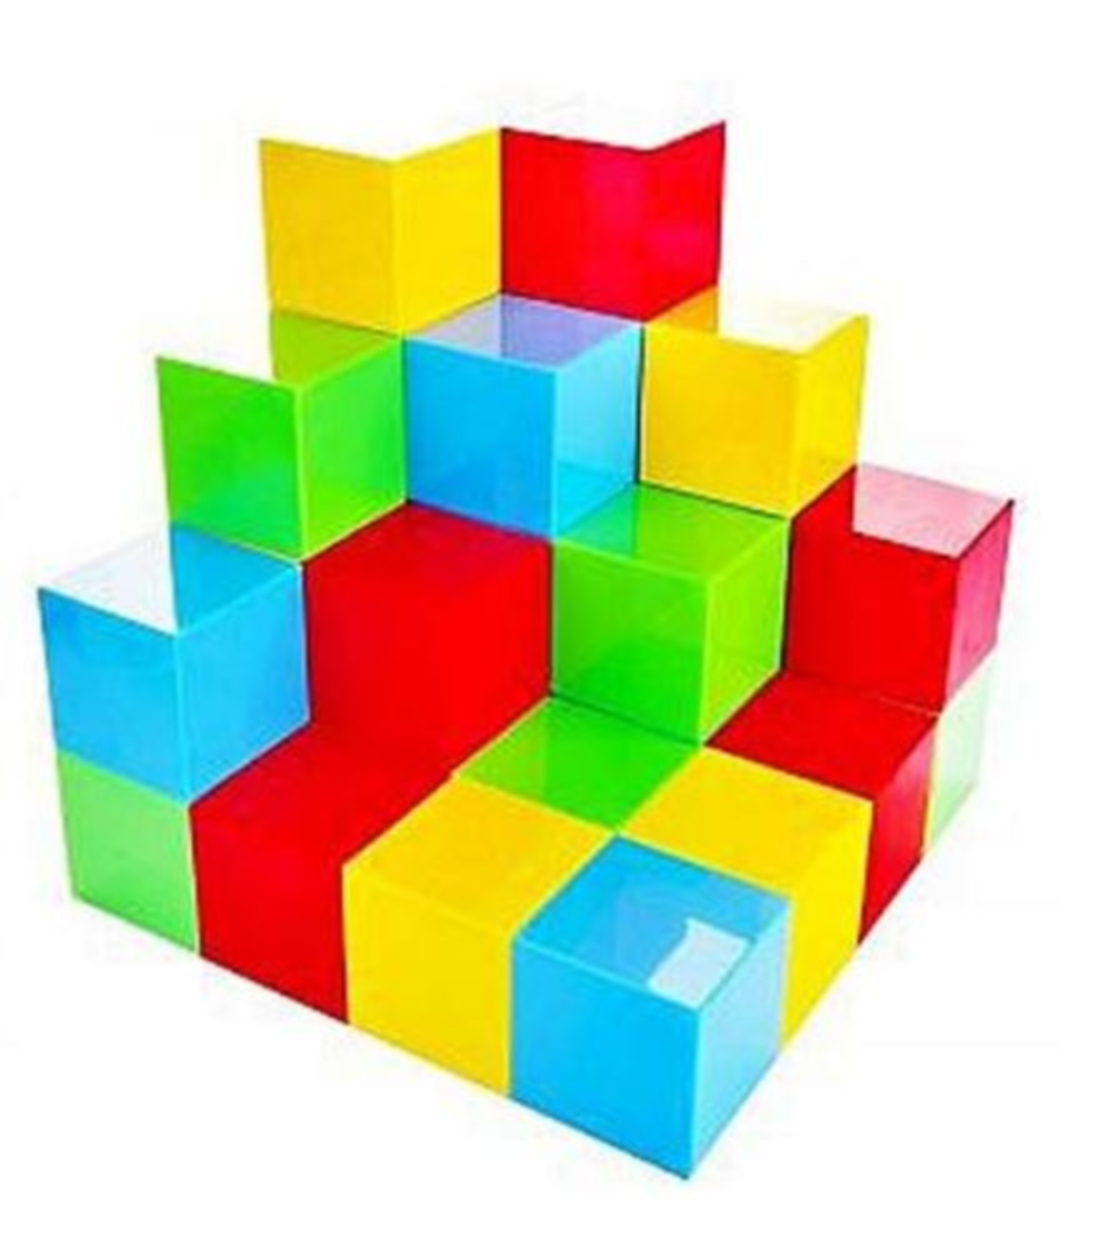 קוביות מגנט 64 חלקים צבעוני (כל קוביה צבע אחיד) (5cm)